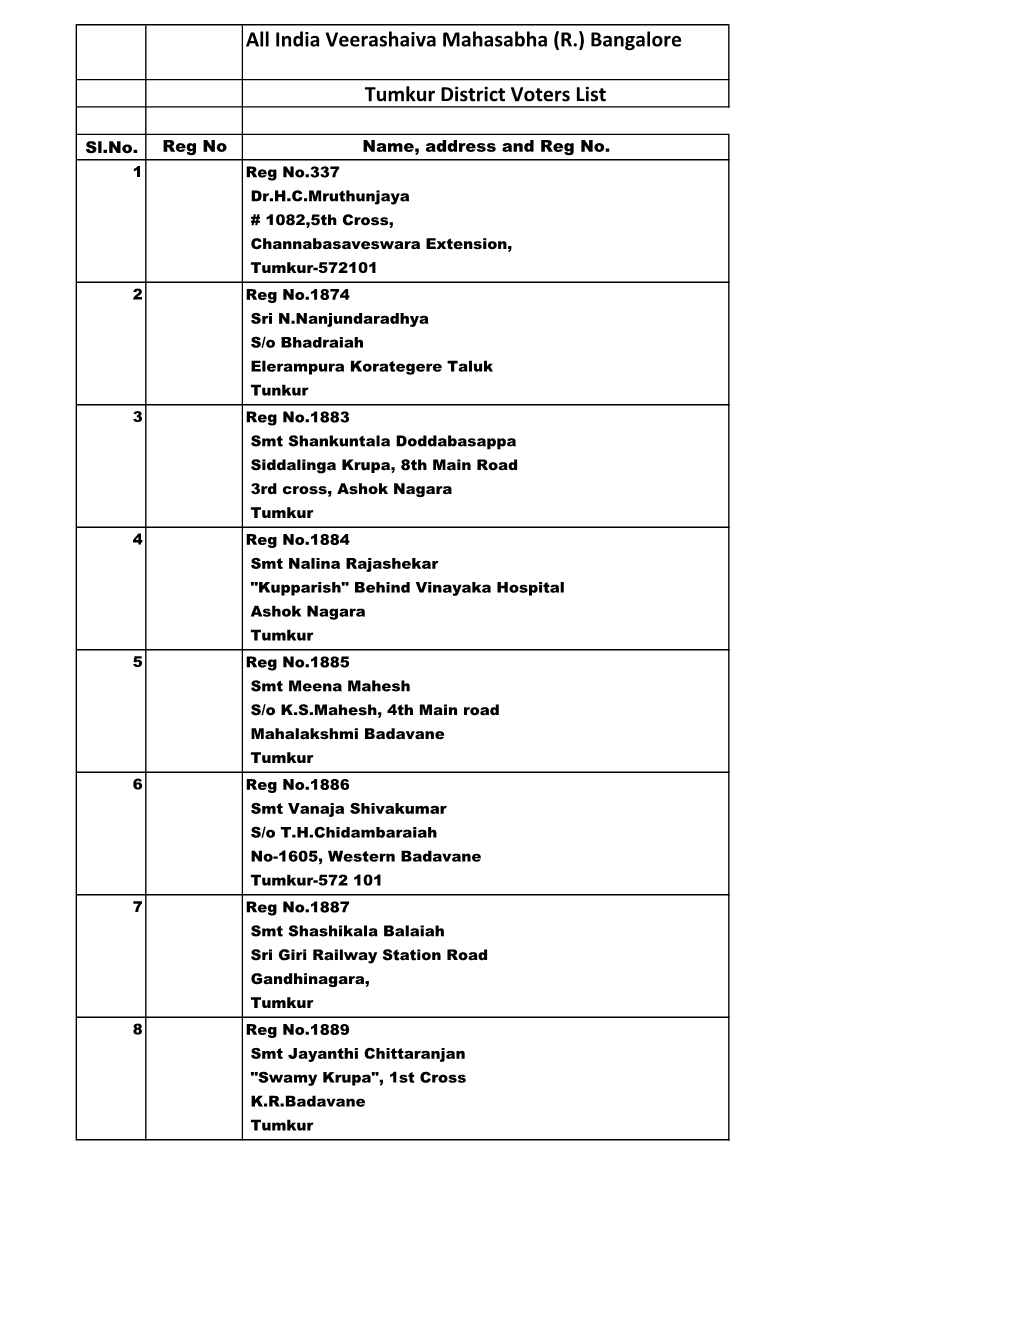 Tumkur District Voters List.Xlsx